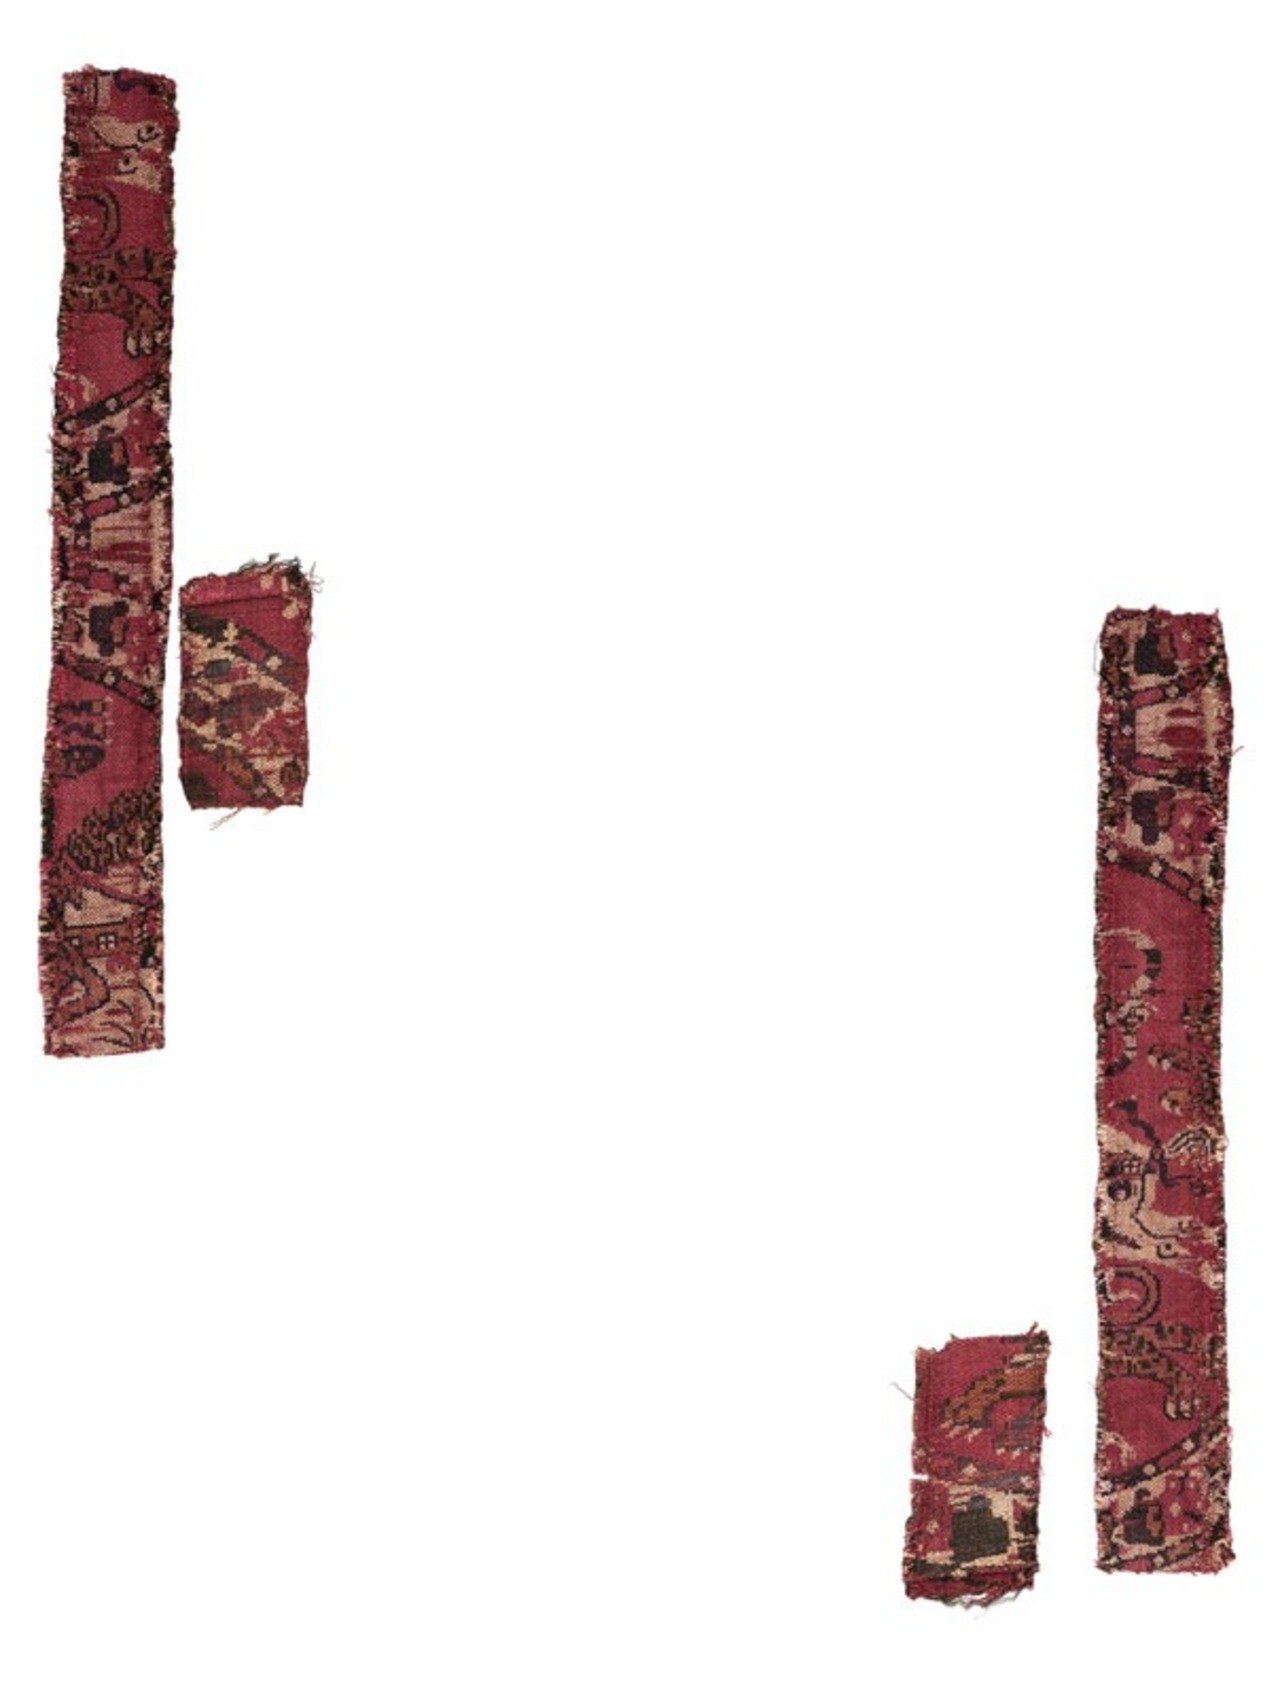 Bande de samit à décor de chasse, Byzance, entre 8e et première moitié du 9e siècle,  MT 40440. Legs de Jean Pozzi, 1971. © © Lyon, musée des Tissus et des arts décoratifs — D. R. 